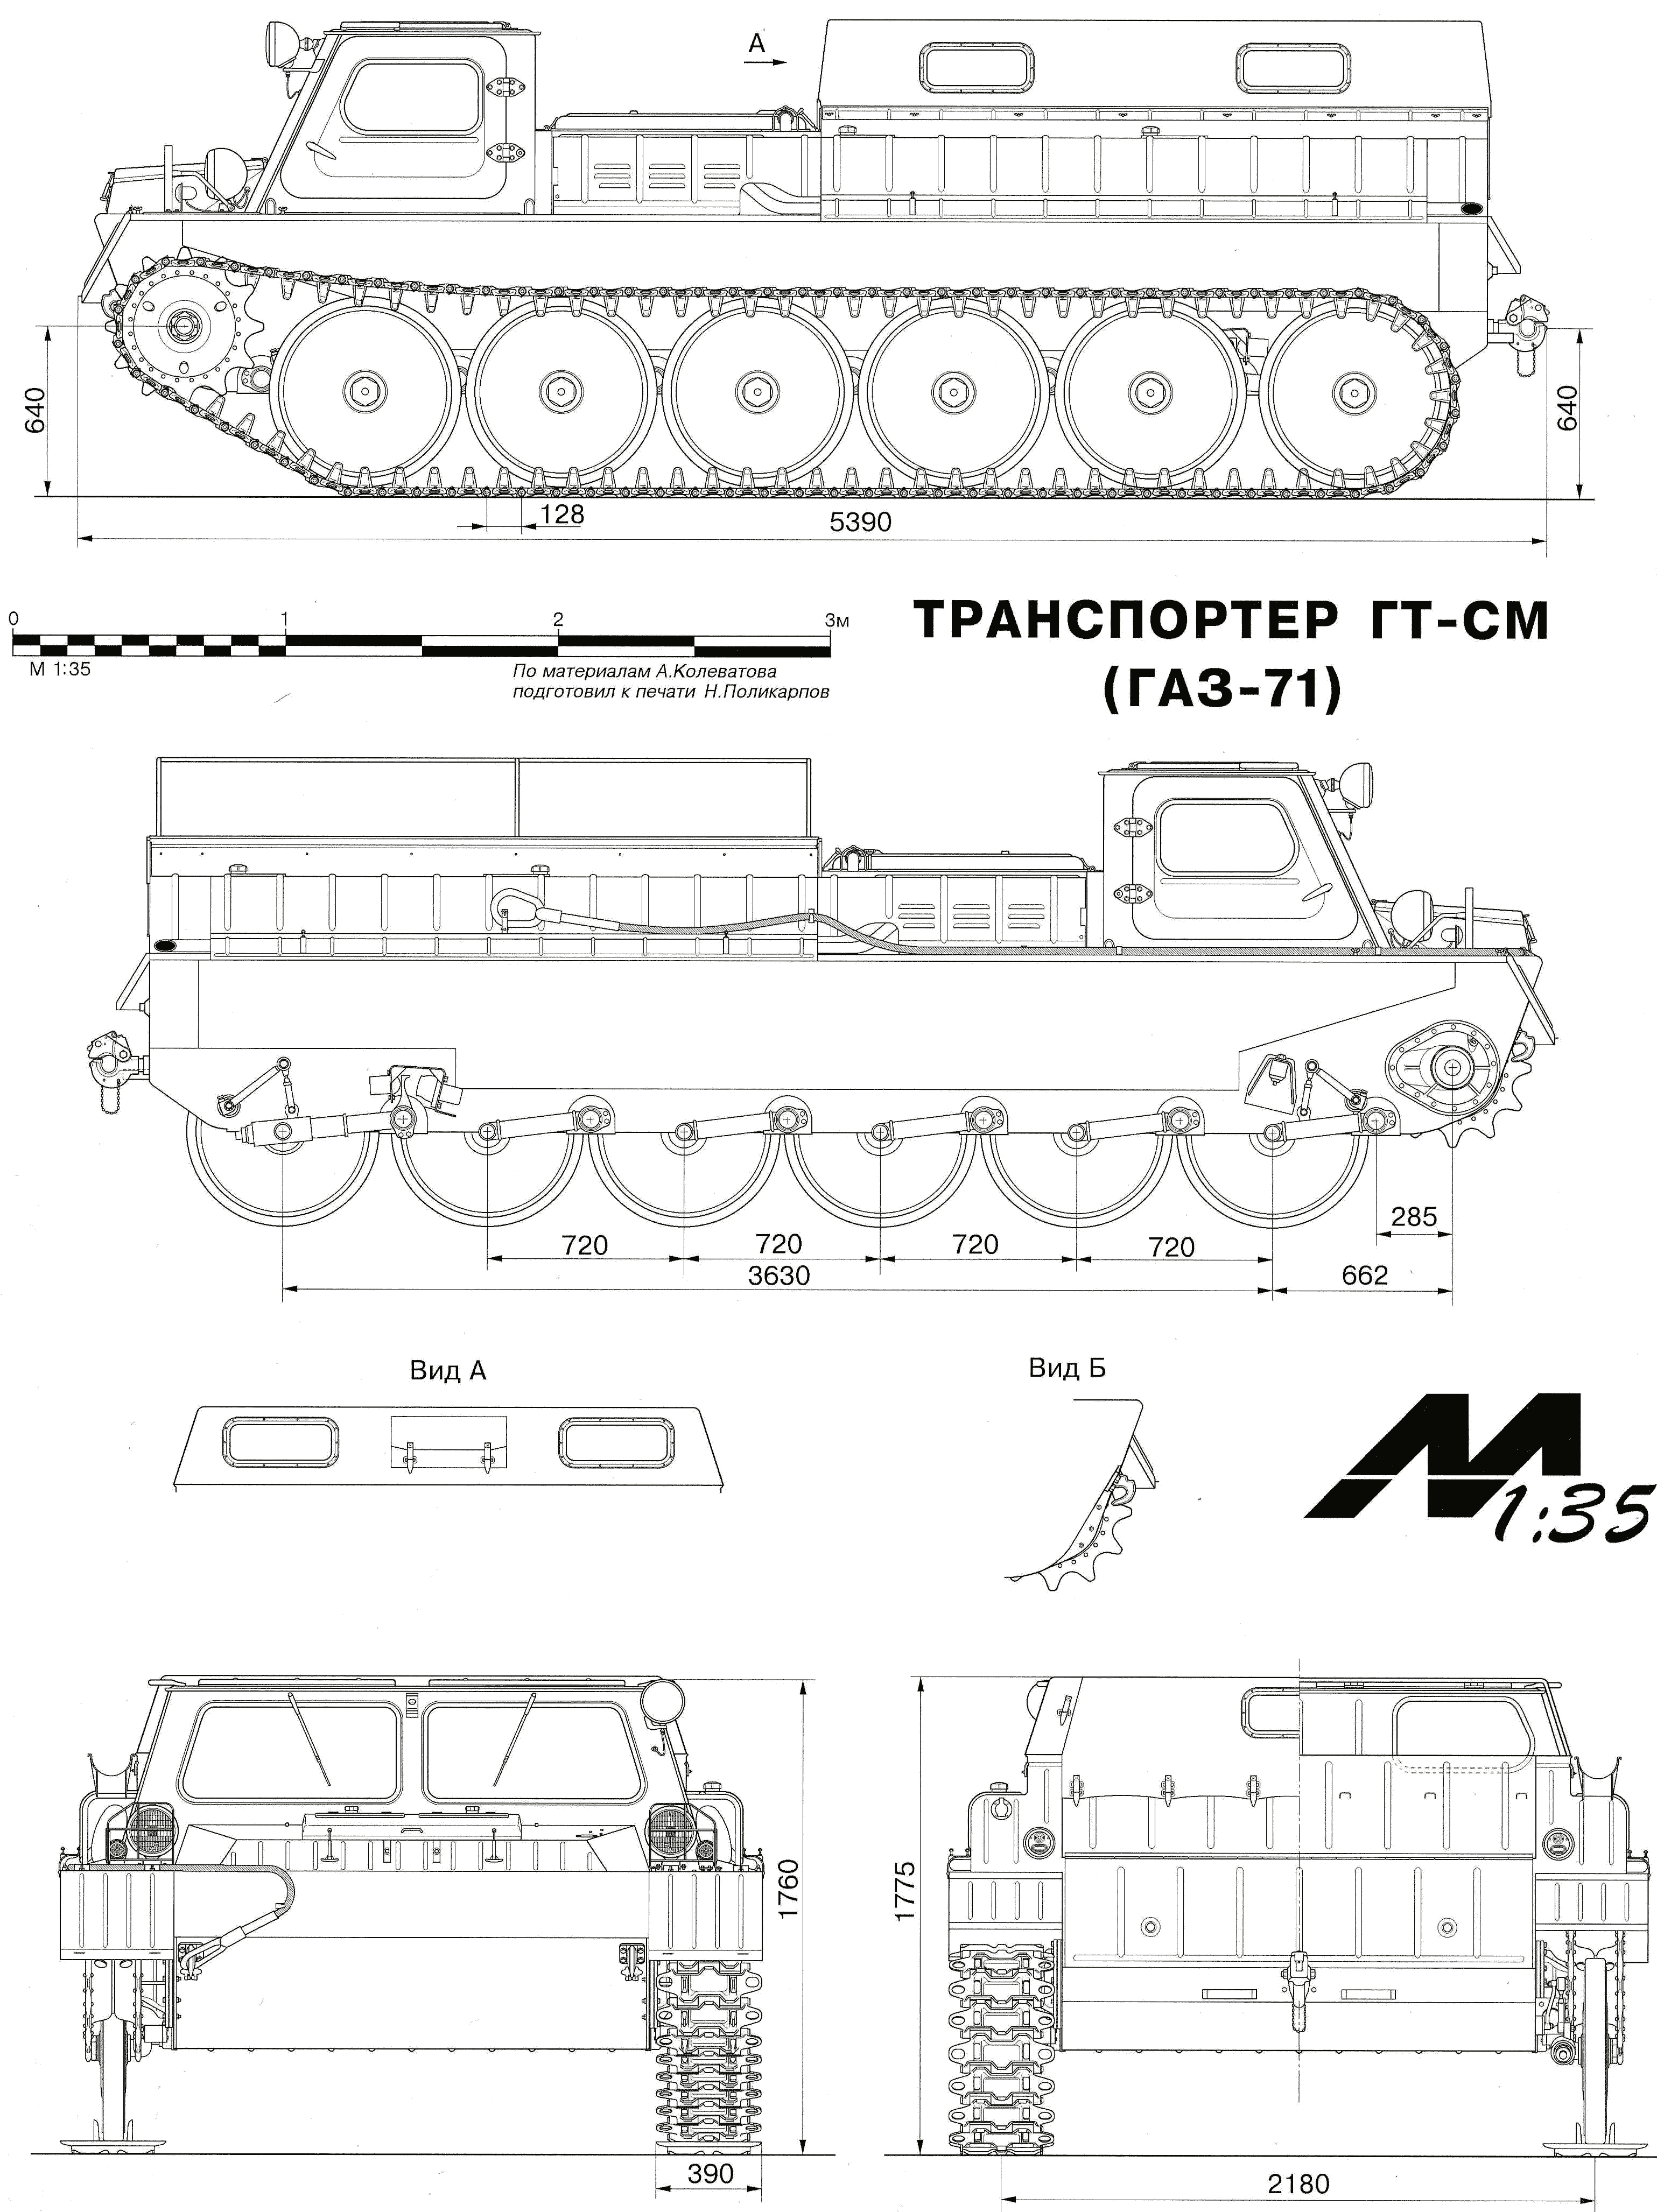 GAZ-71 blueprint